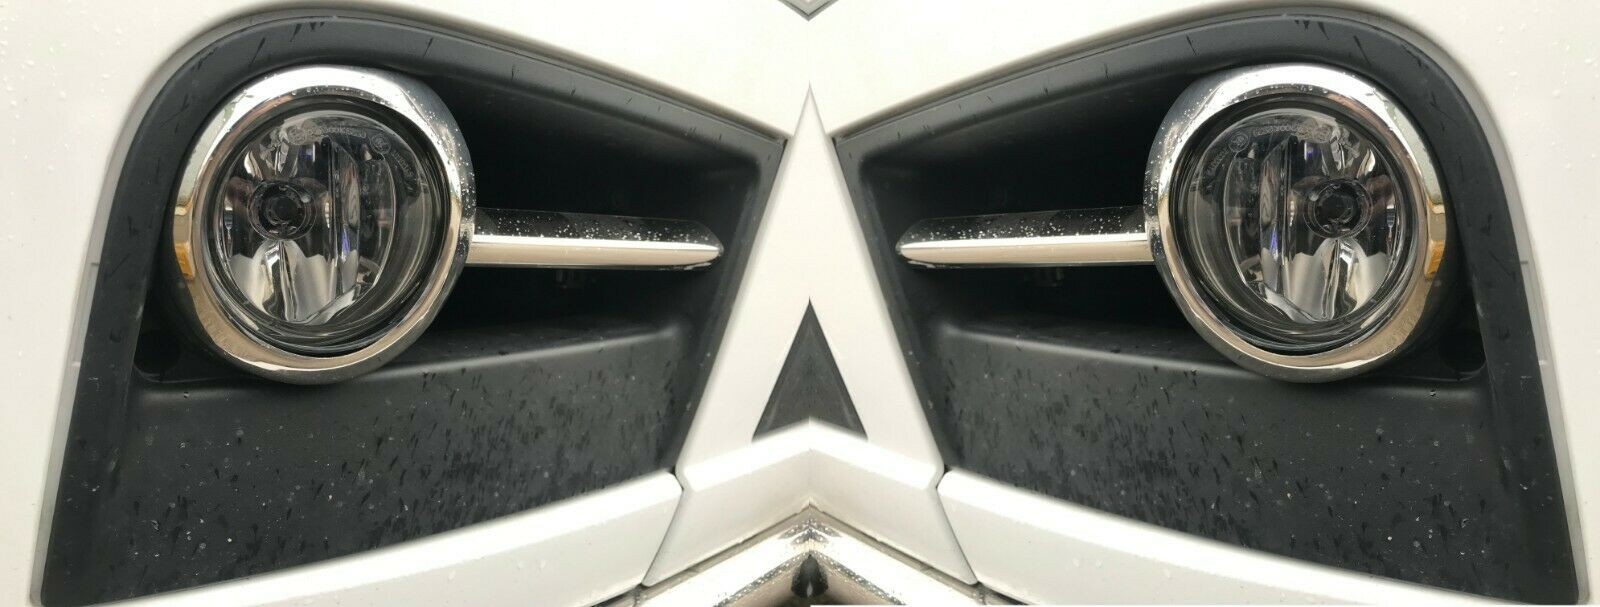 Mercedes ACTROS MP4 Chrome Fog Lamp Rim Cover 2 pcs + Side Trim 2 pcs S.STEEL